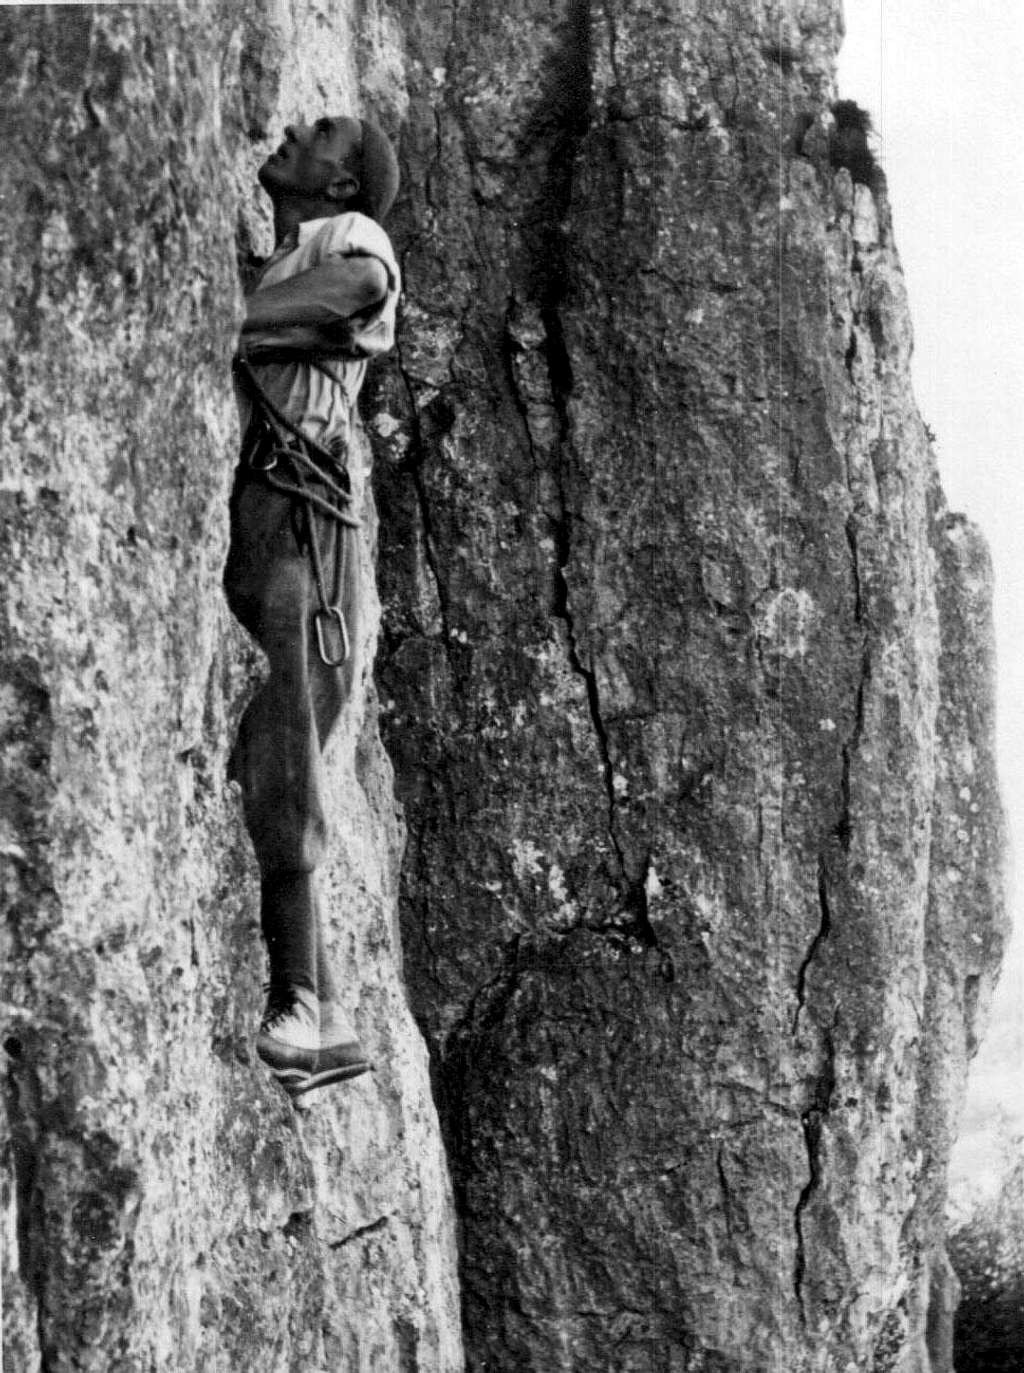 Climbing Vollrathriss at Riffler, Frankenjura